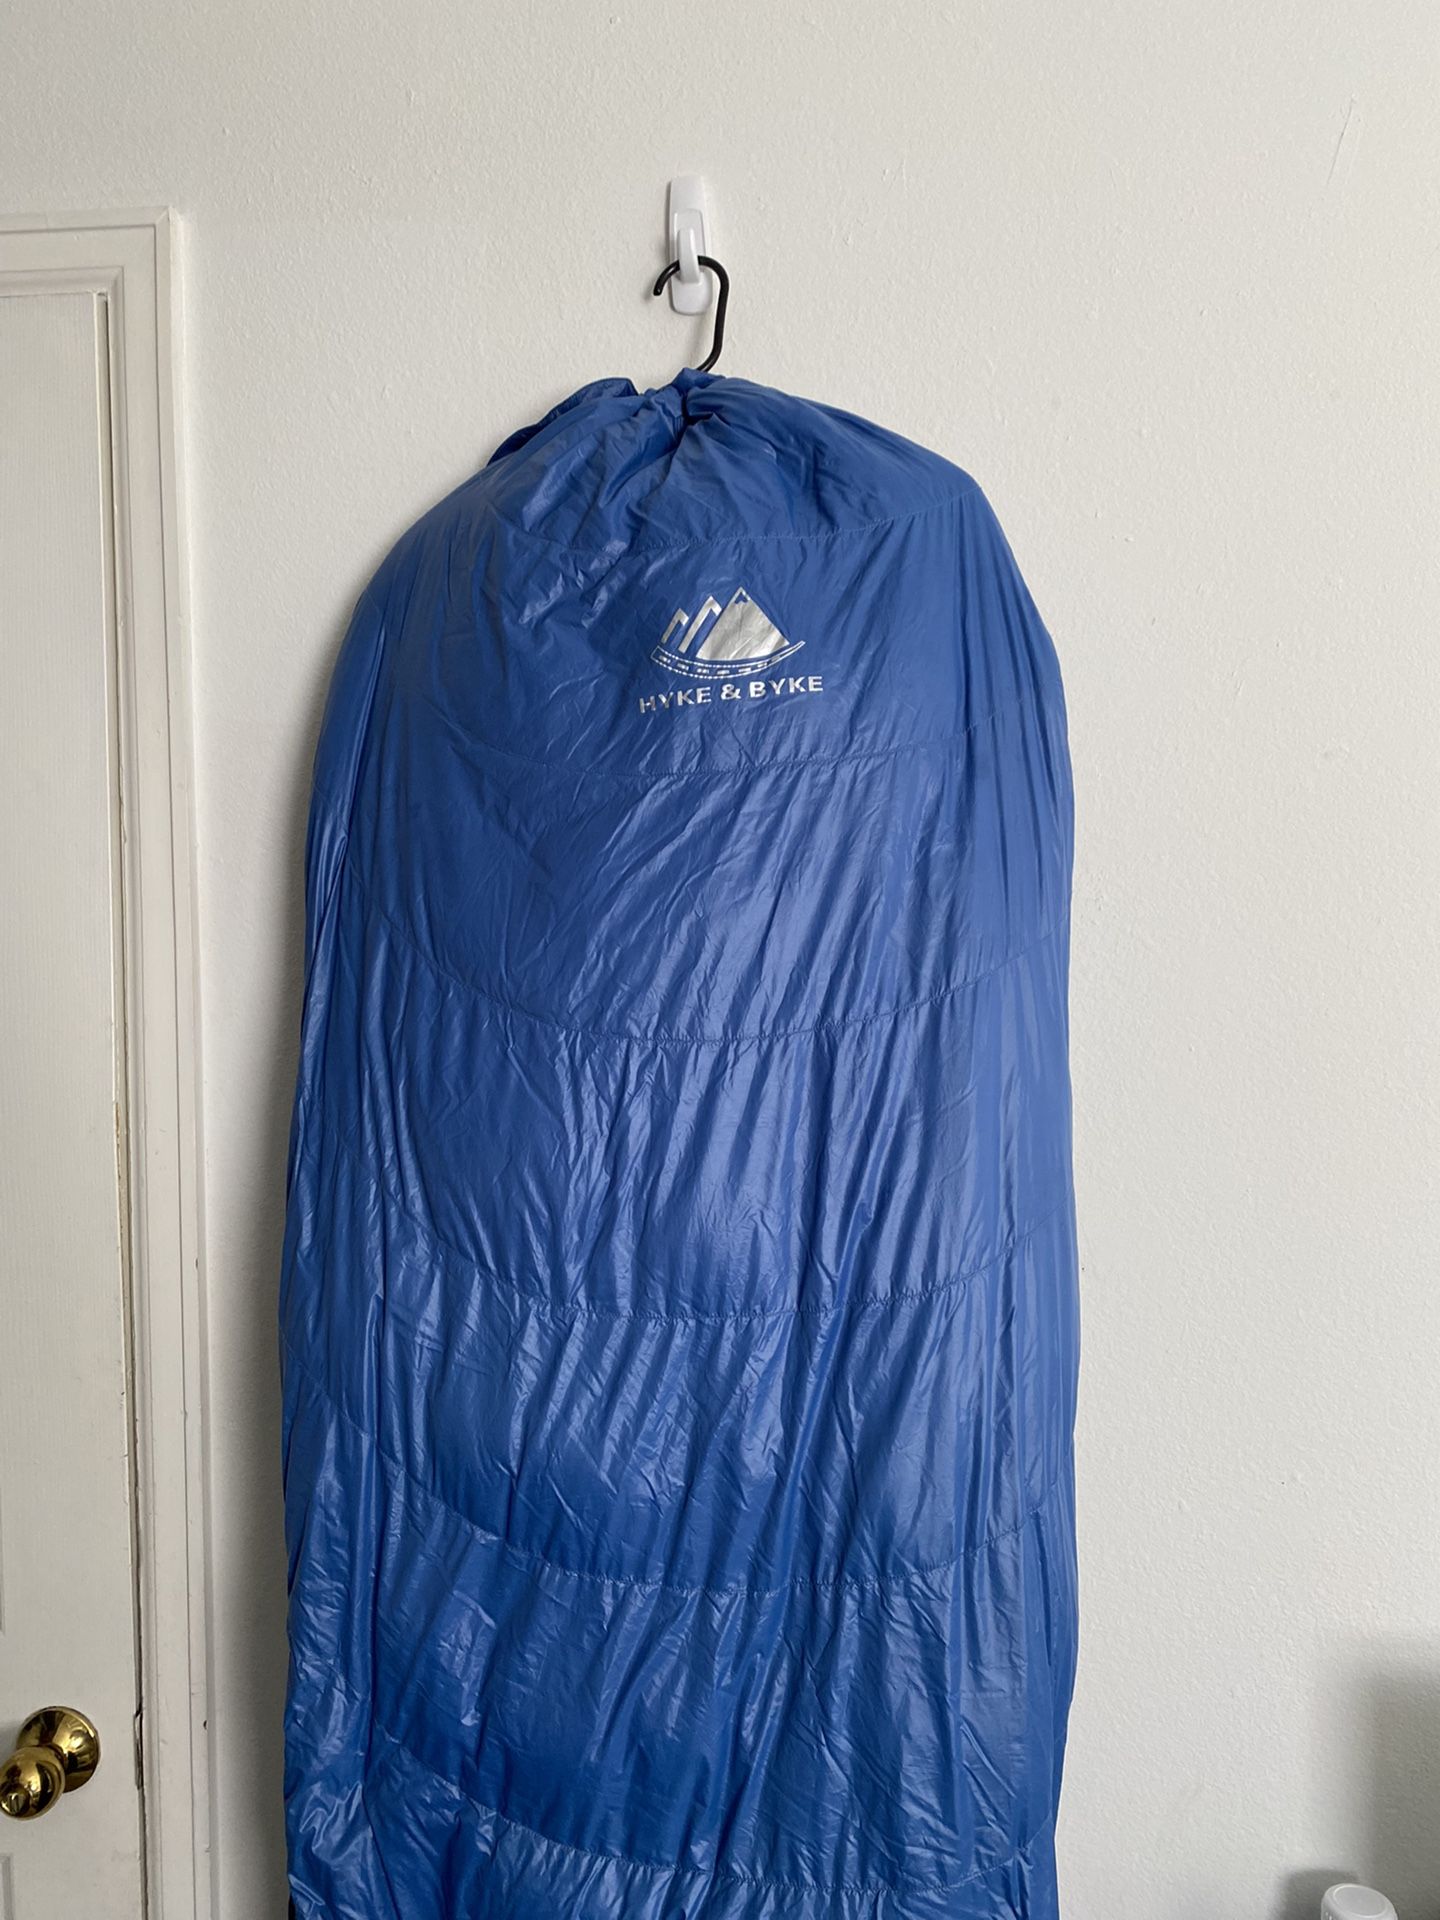 0 Degree Ultralight Sleeping Bag - Hyke & Byke